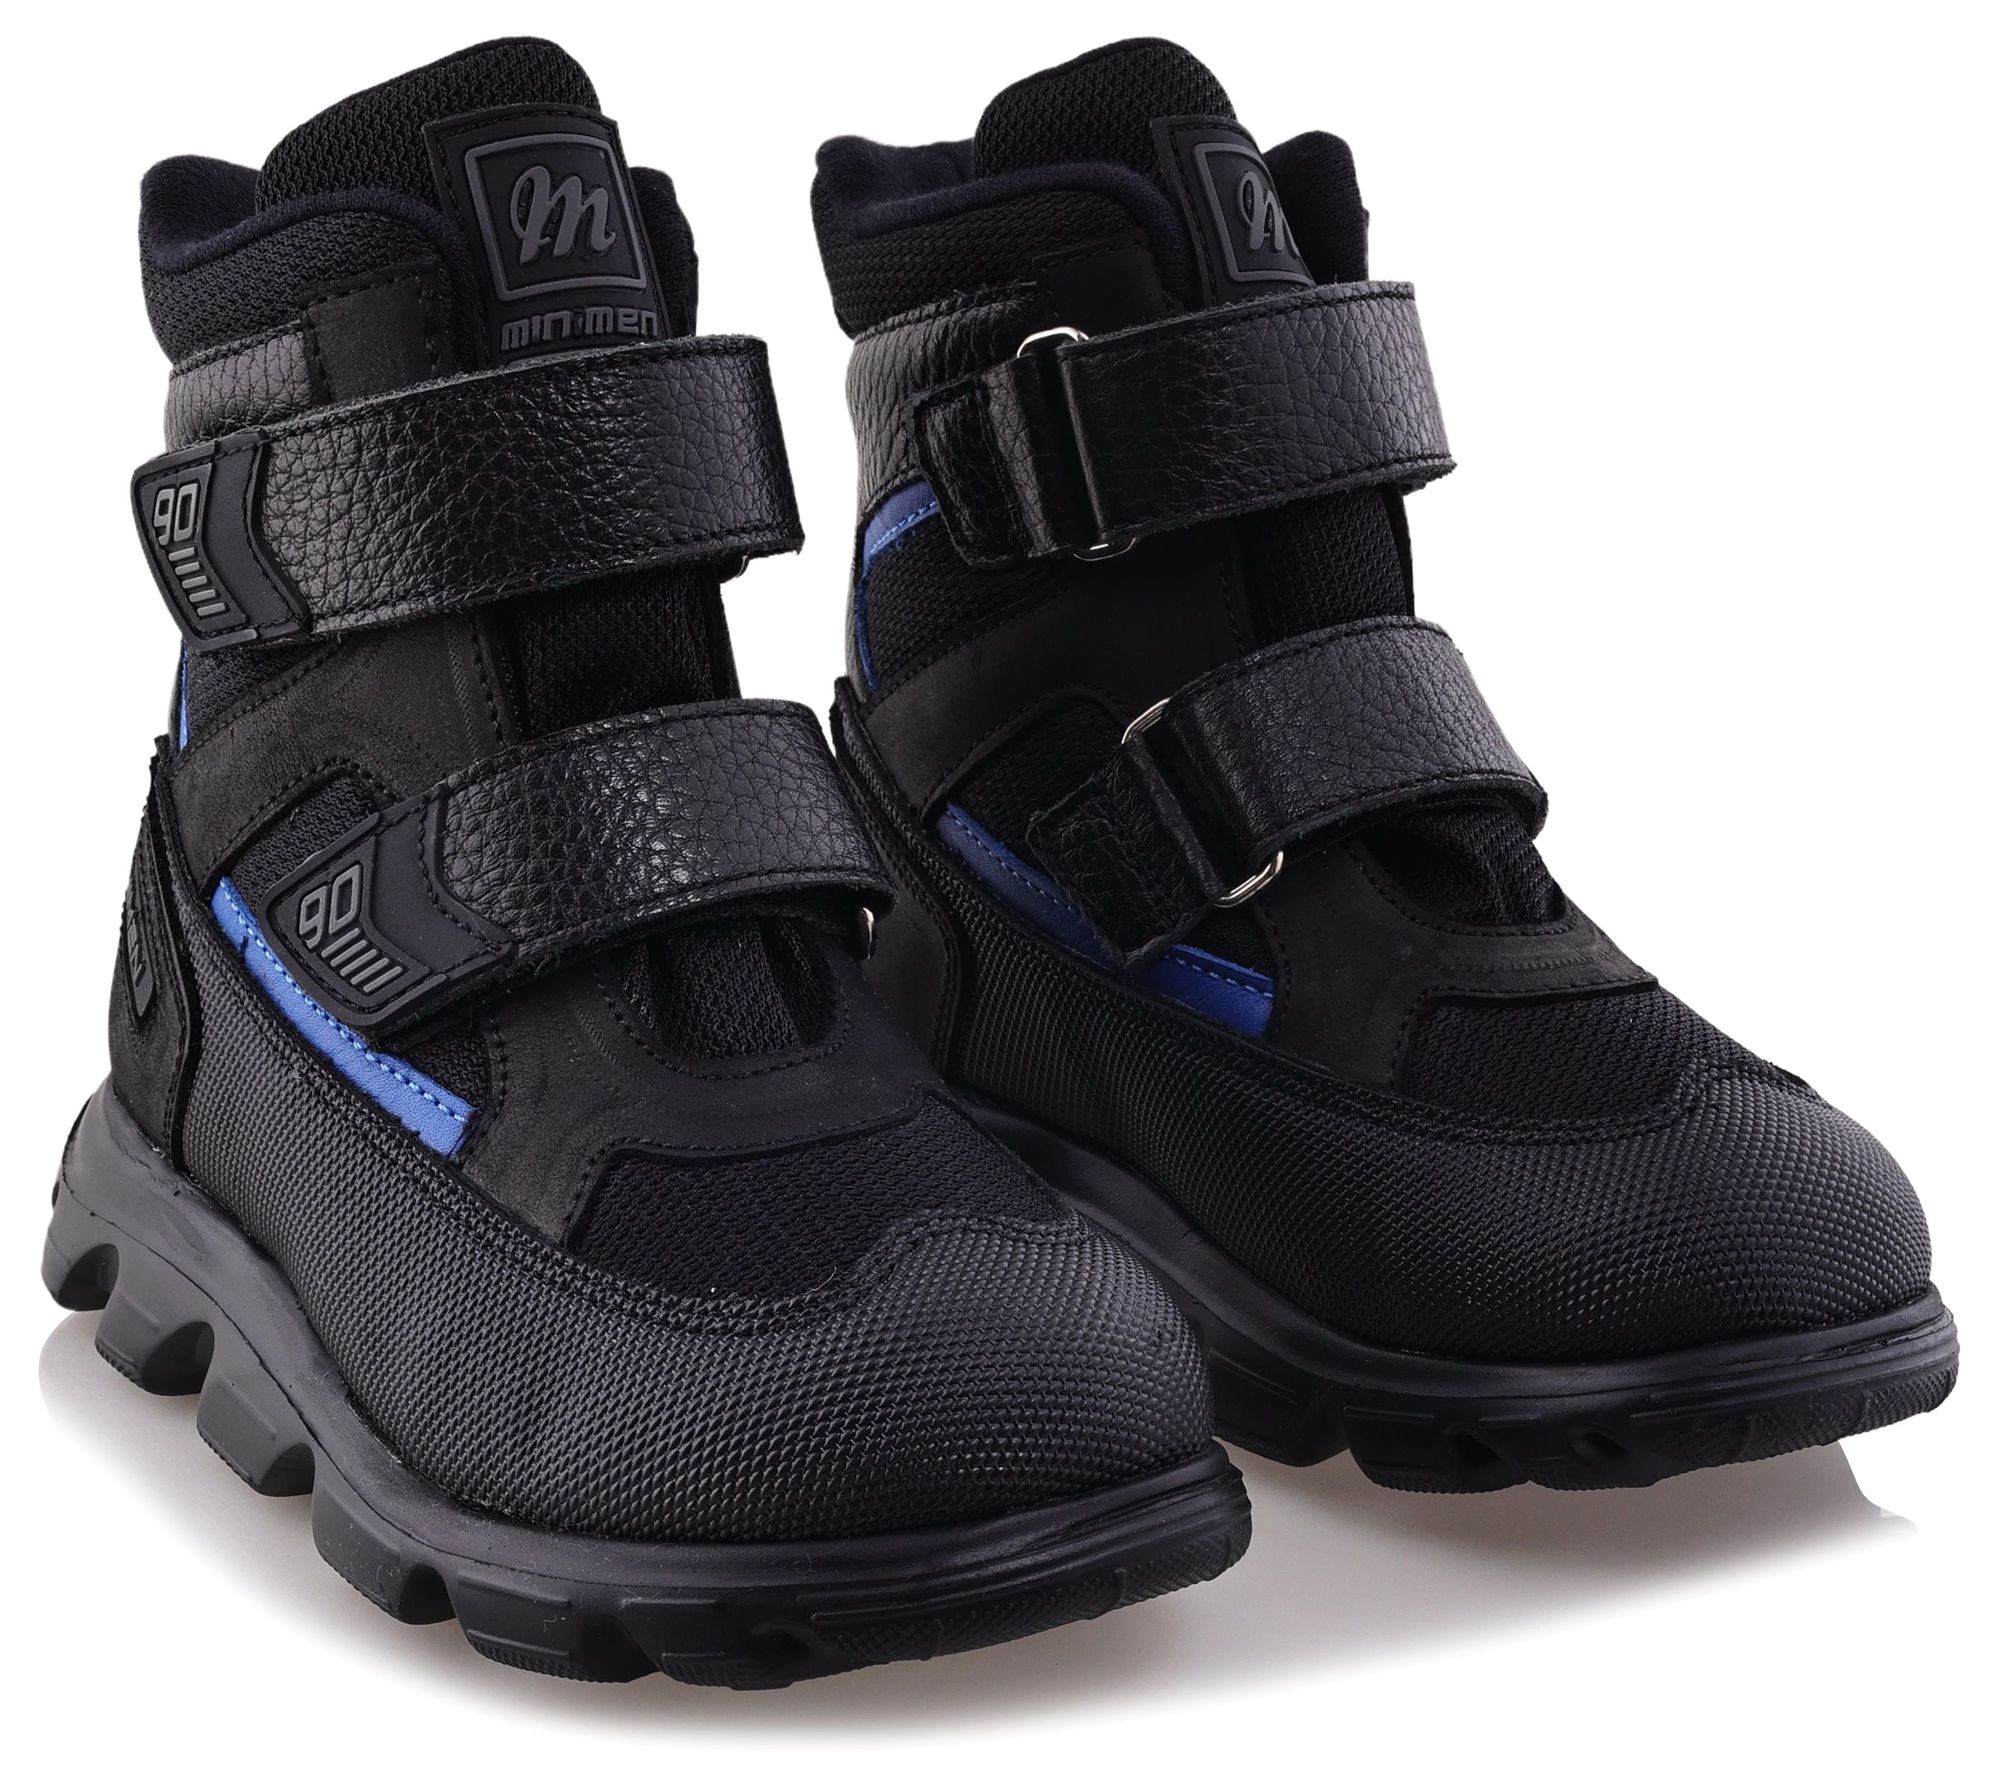 Ботинки Minimen для мальчиков, чёрные, размер 35, 2641-54-23B-01